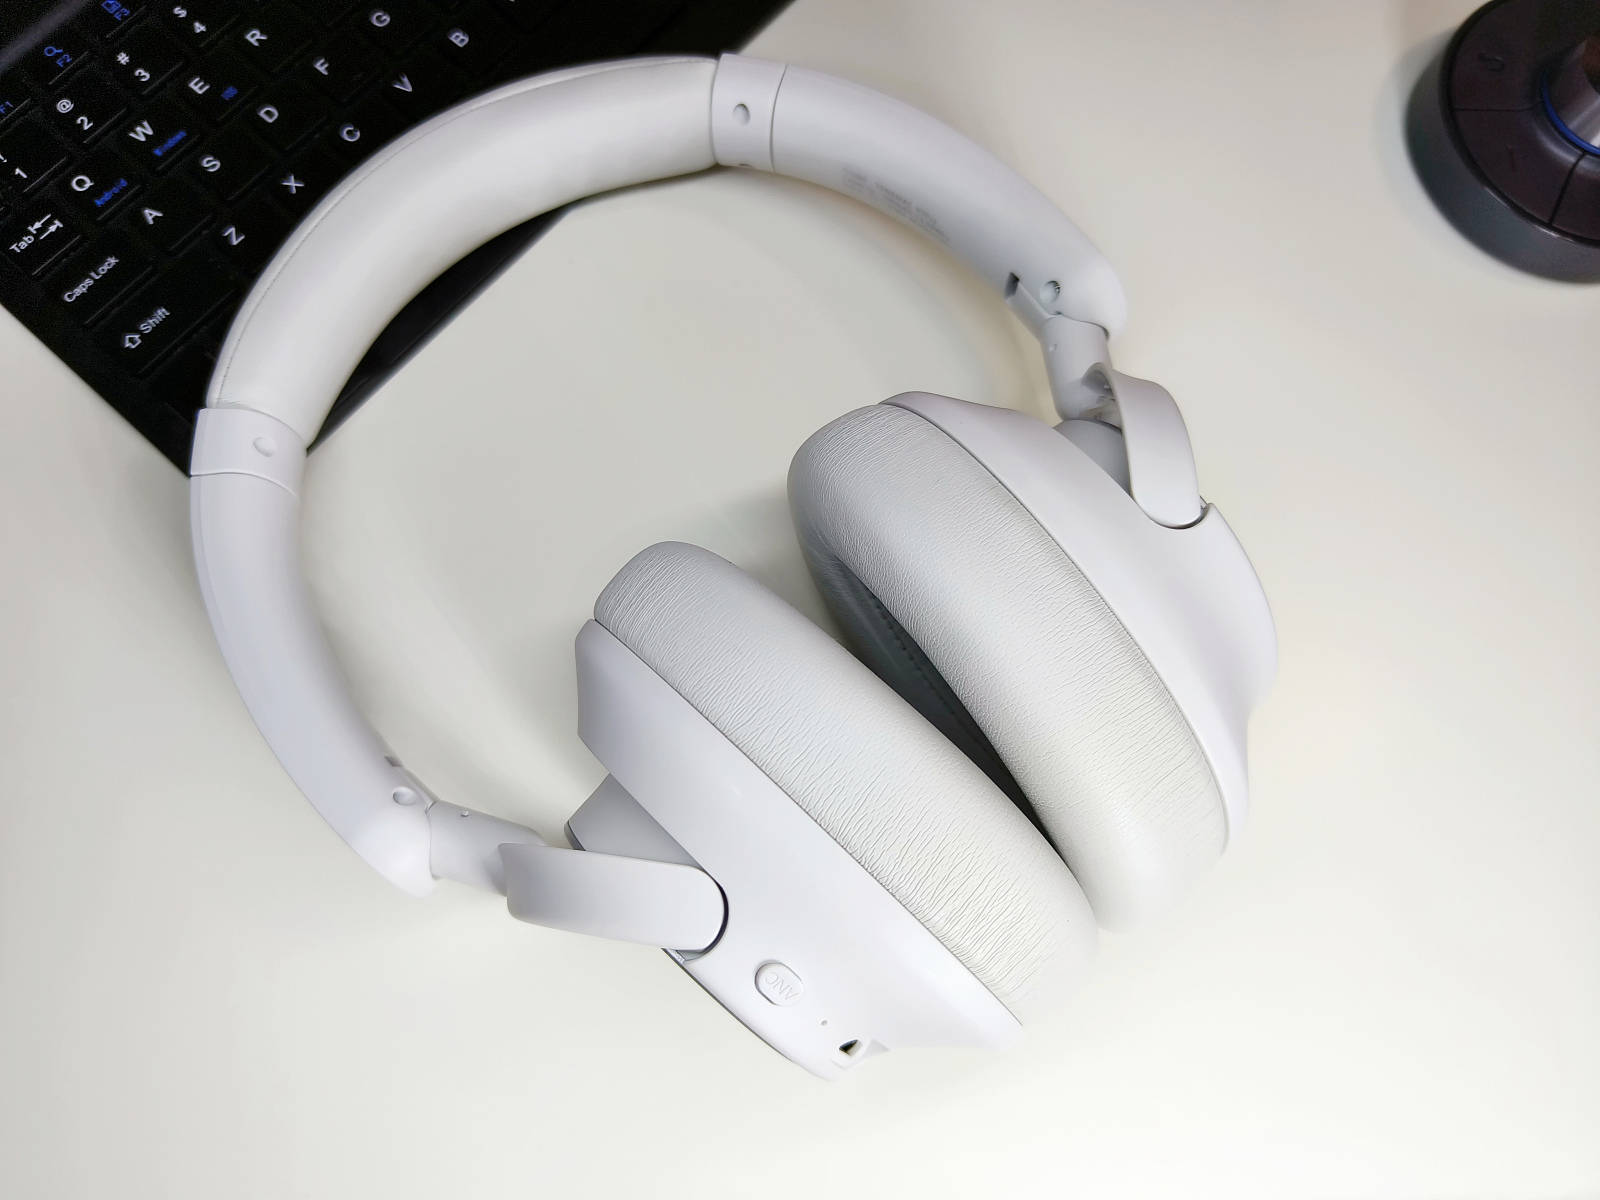 唐麦 h7 pro主动降噪头戴式耳机:沉浸式音质,主动降噪新体验